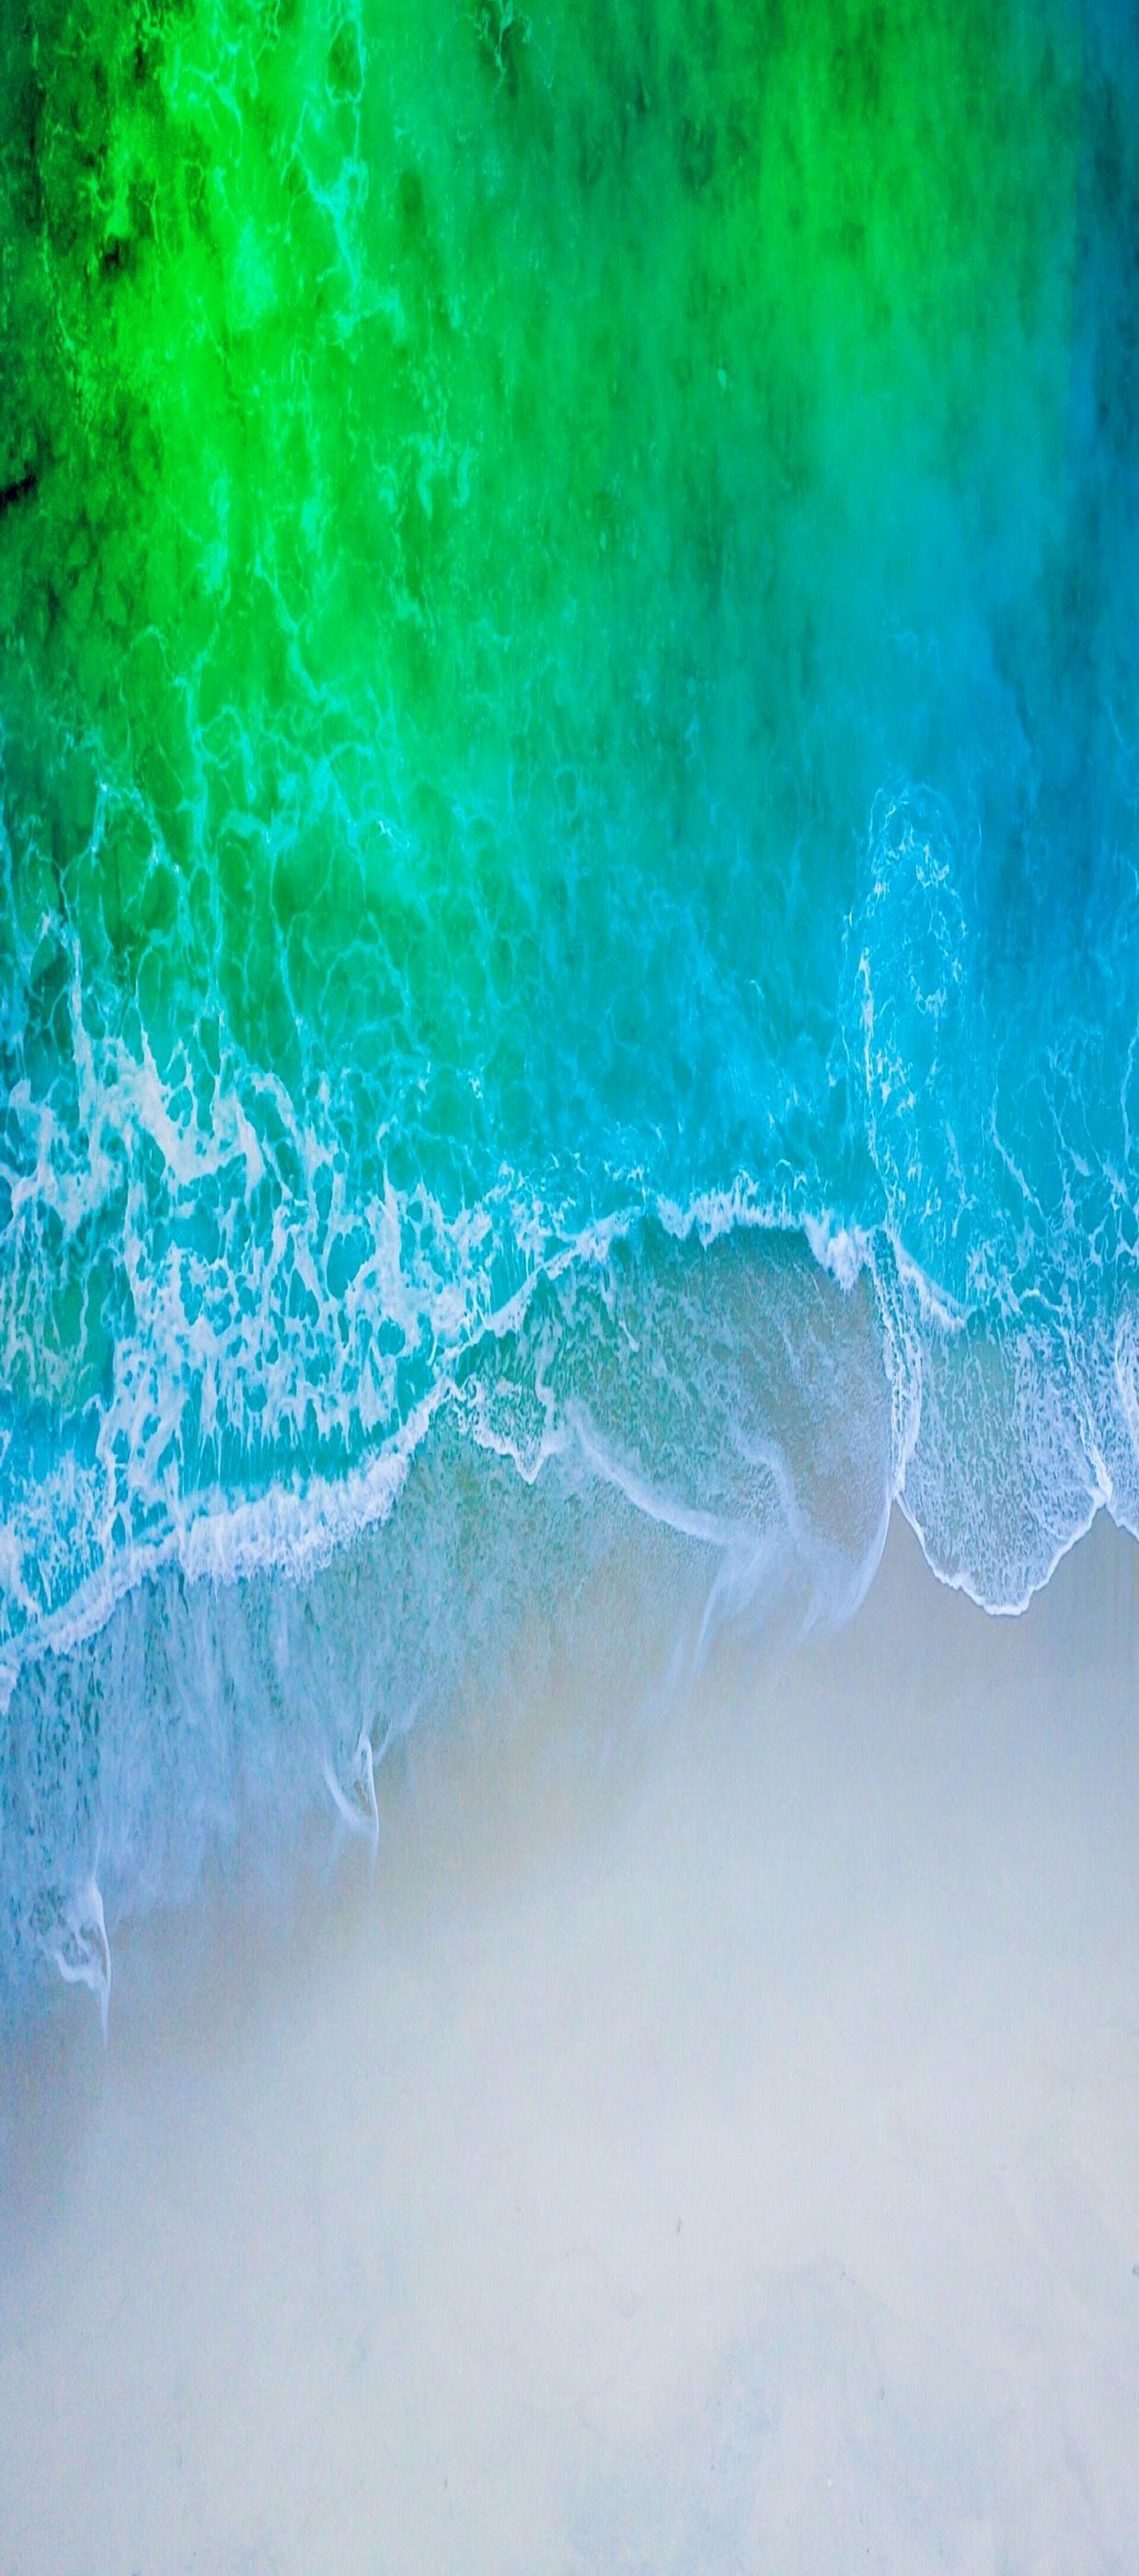 Aqua Blue Wallpaper New Ios 11 iPhone X Aqua Blue Water Beach